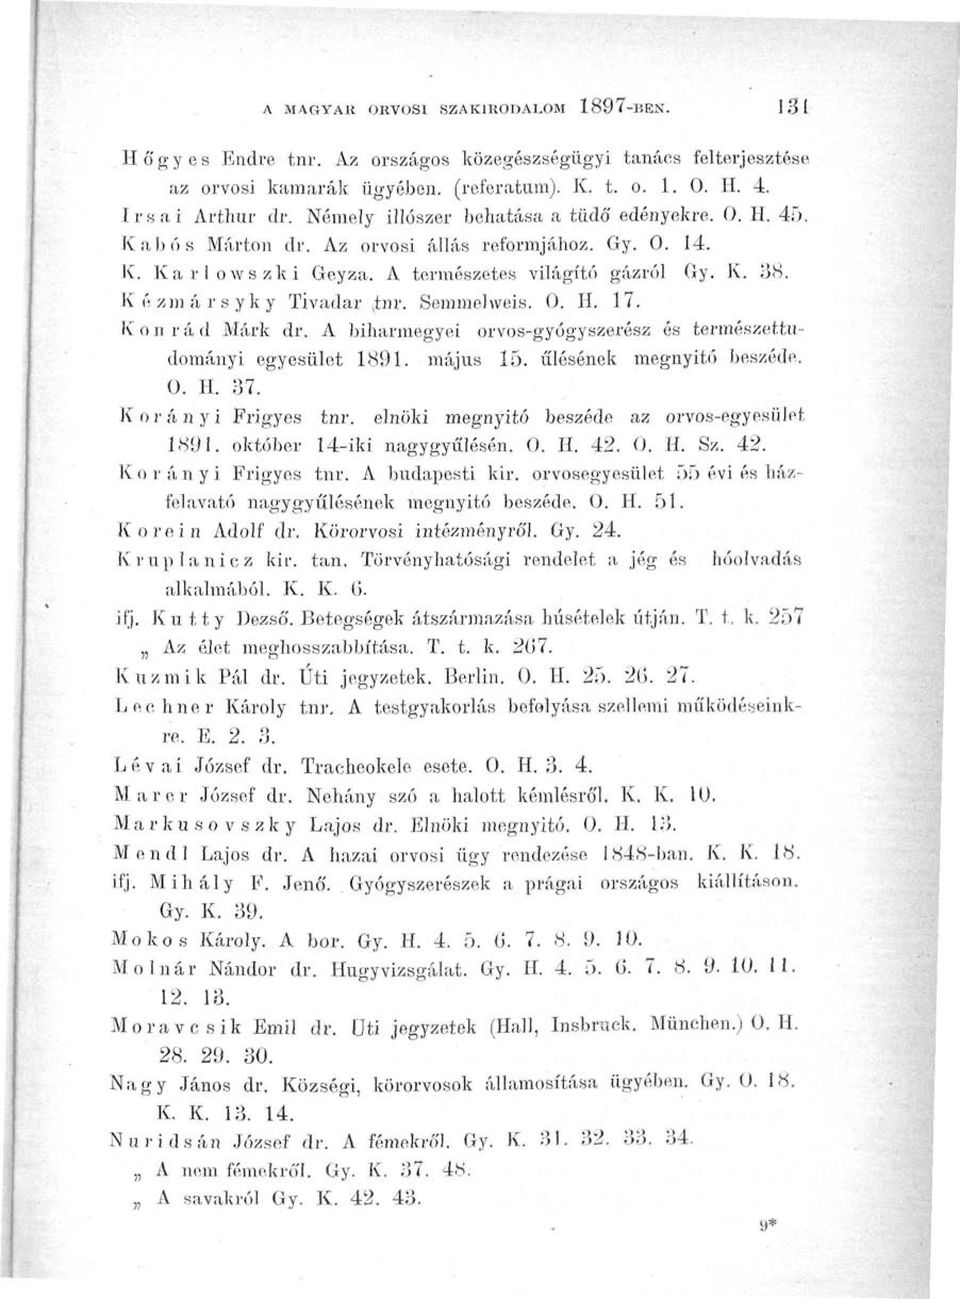 Semmelweis. 0. H. 17. Konrád Márk dr. A biharmegyei orvos-gyógyszerész és természettudományi egyesület 1891. május 15. ülésének megnyitó beszéde. 0. H. 37. Korányi Frigyes tnr.